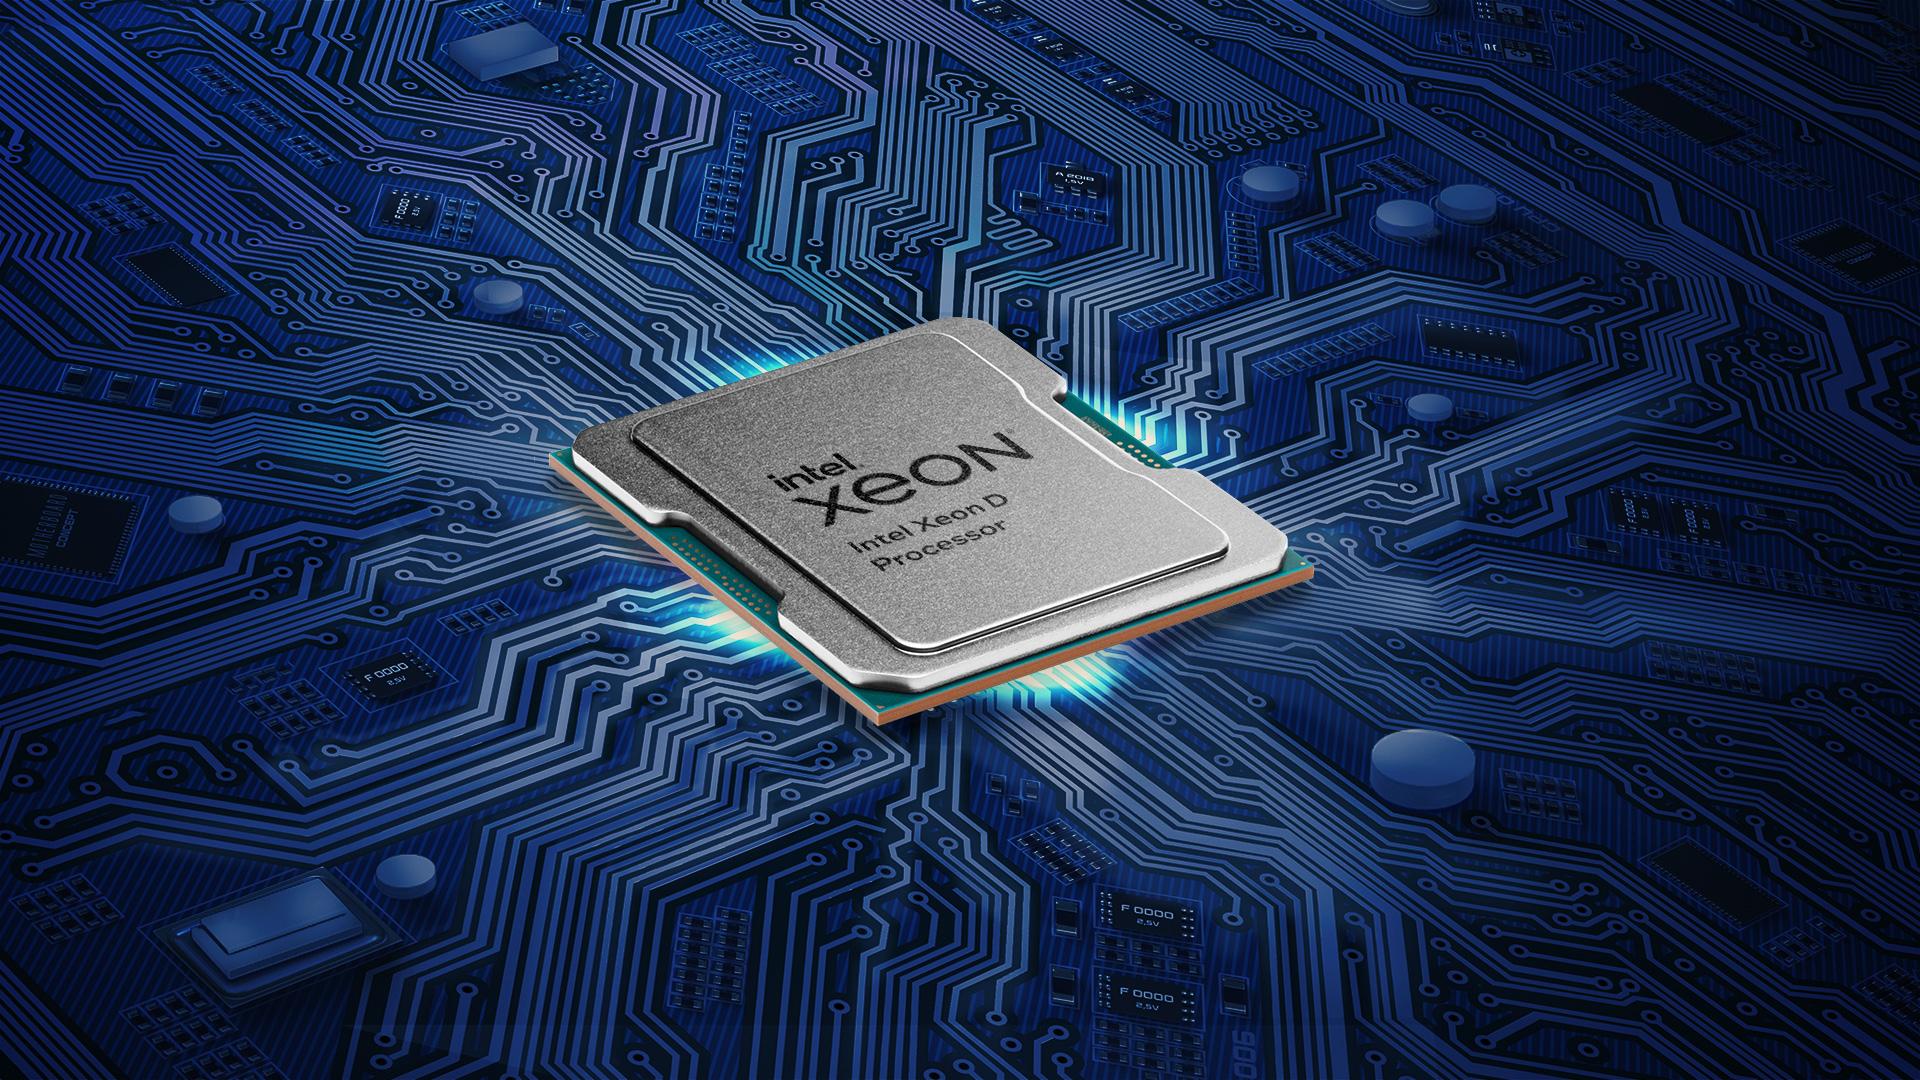 Ra mắt bộ xử lý Intel Xeon D, hệ thống trên vi mạch (SoC) mới nhất của Intel đẩy mạnh công nghệ 5G